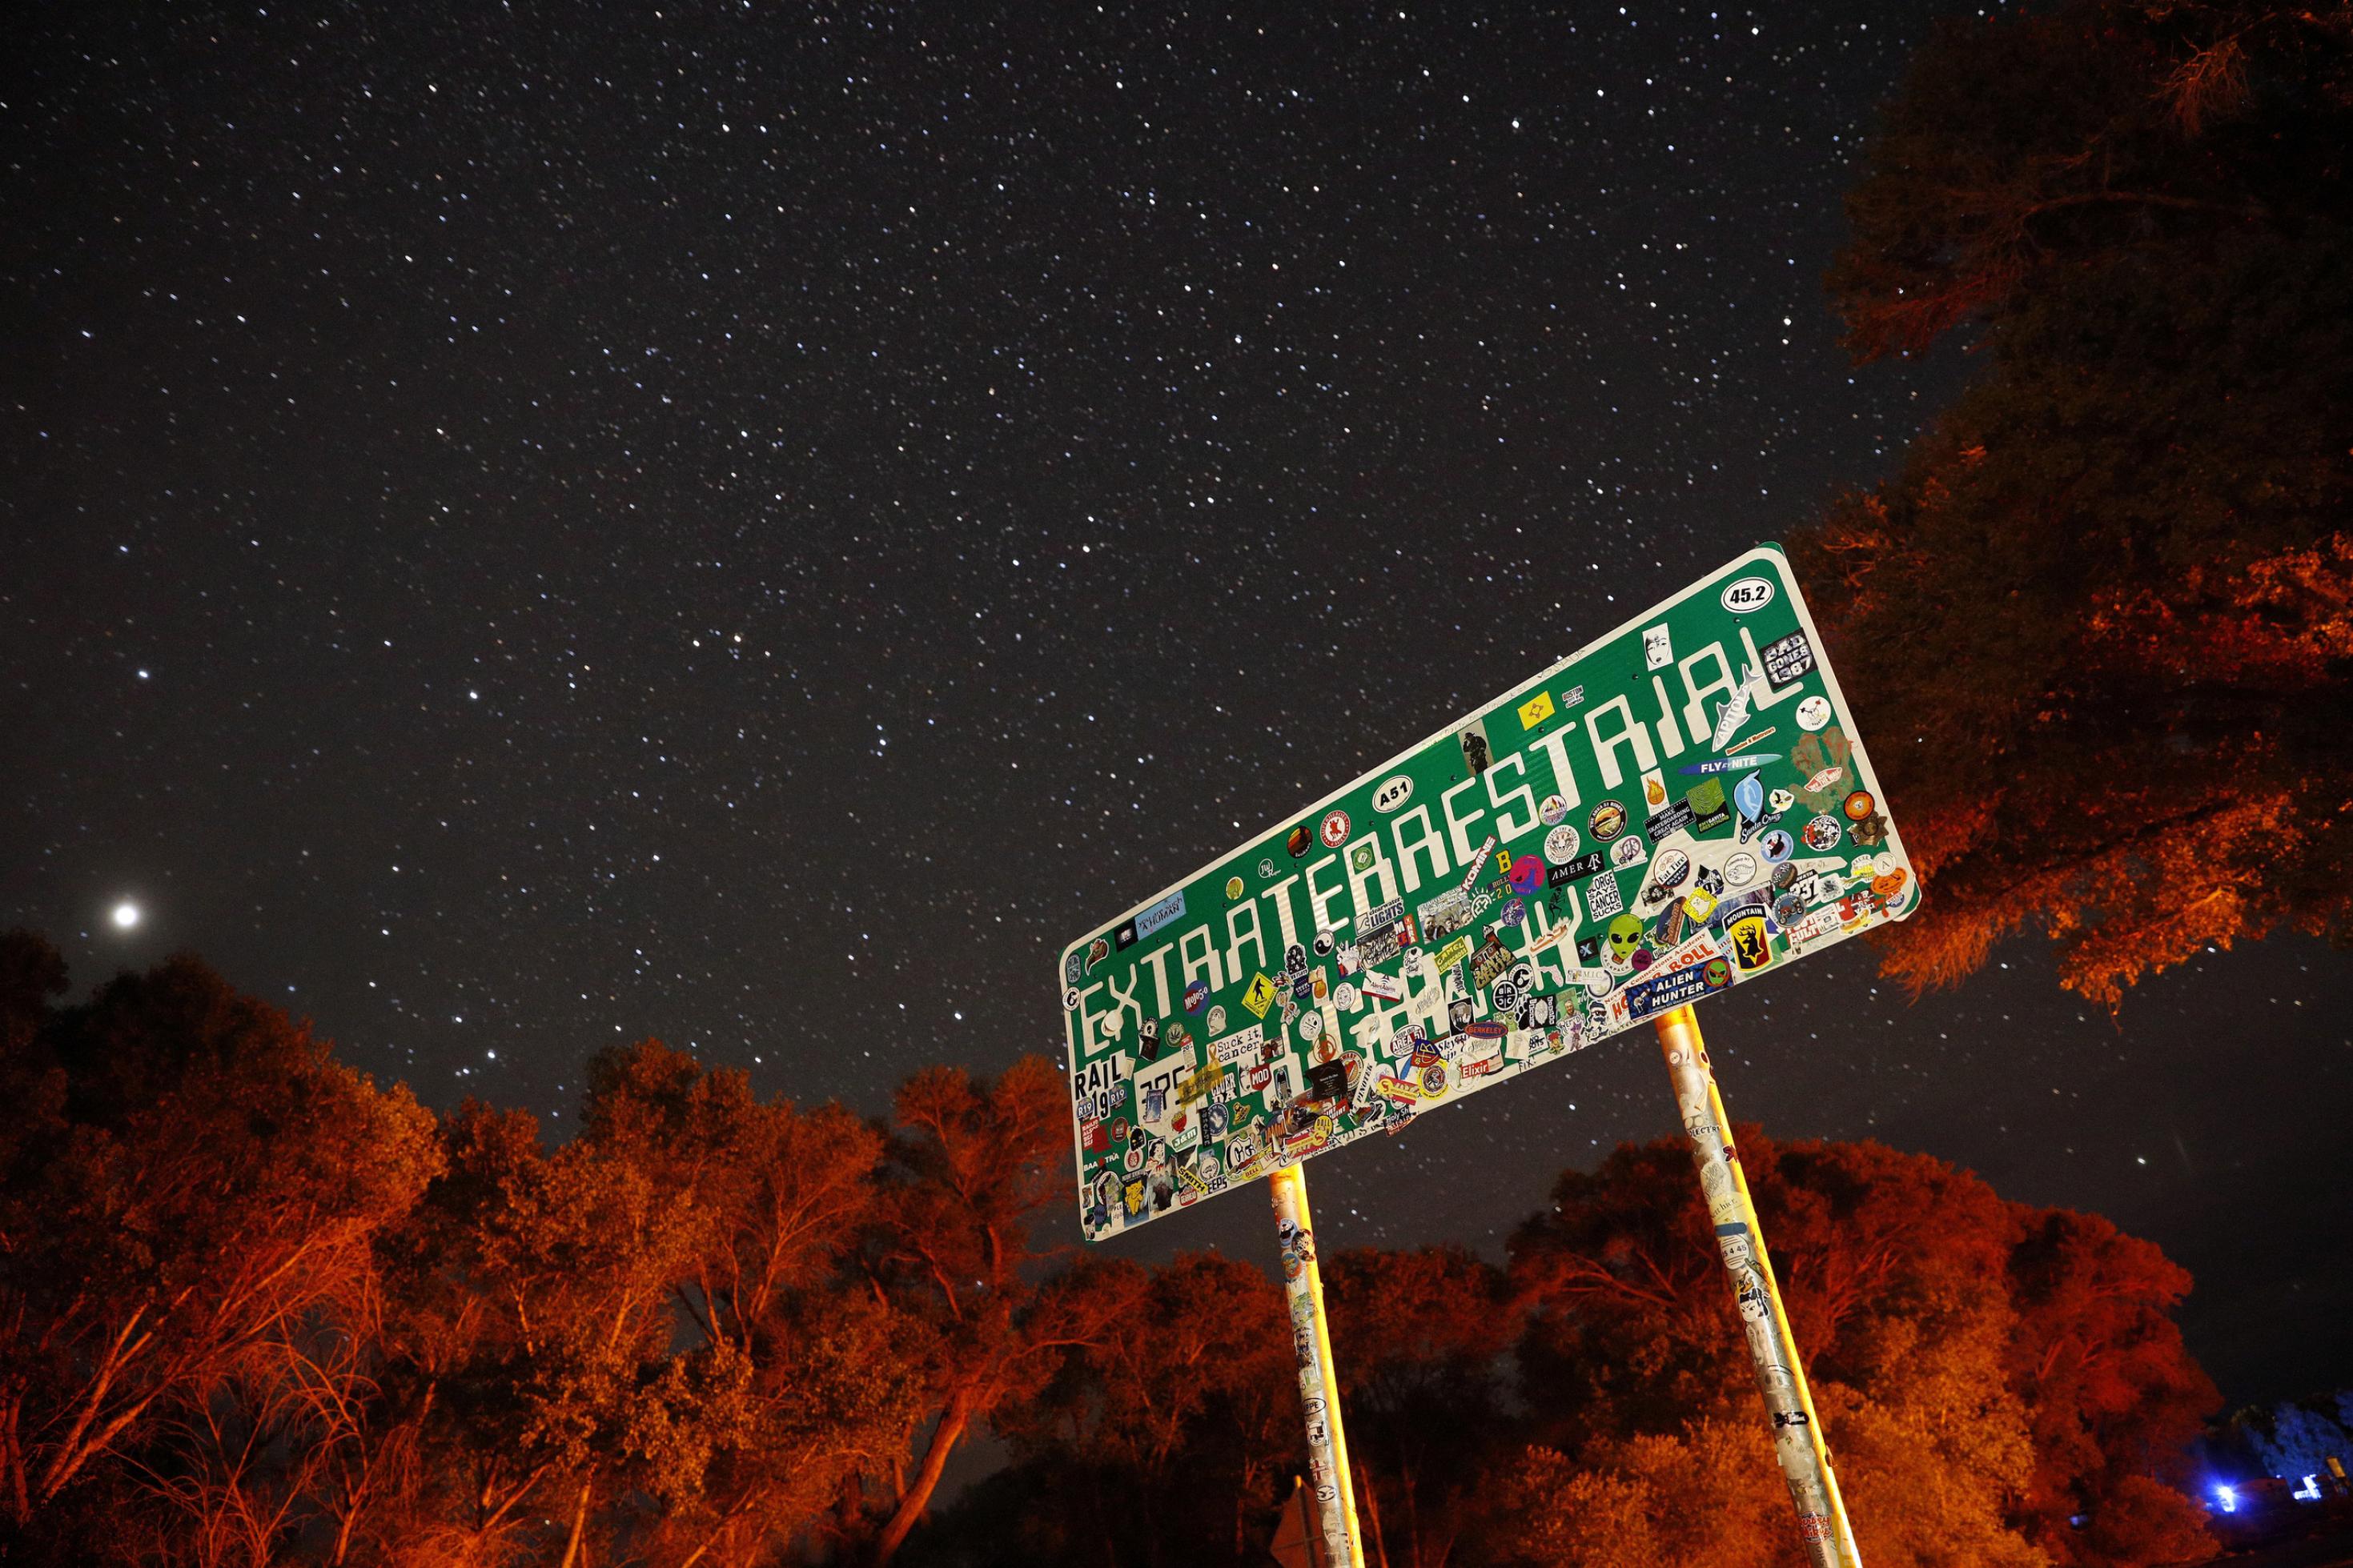 Ein mit Aufklebern überklebtes Schild mit der Aufschrift „Extraterrestrial Highway“ steht nachts unter einem Sternenhimmel.